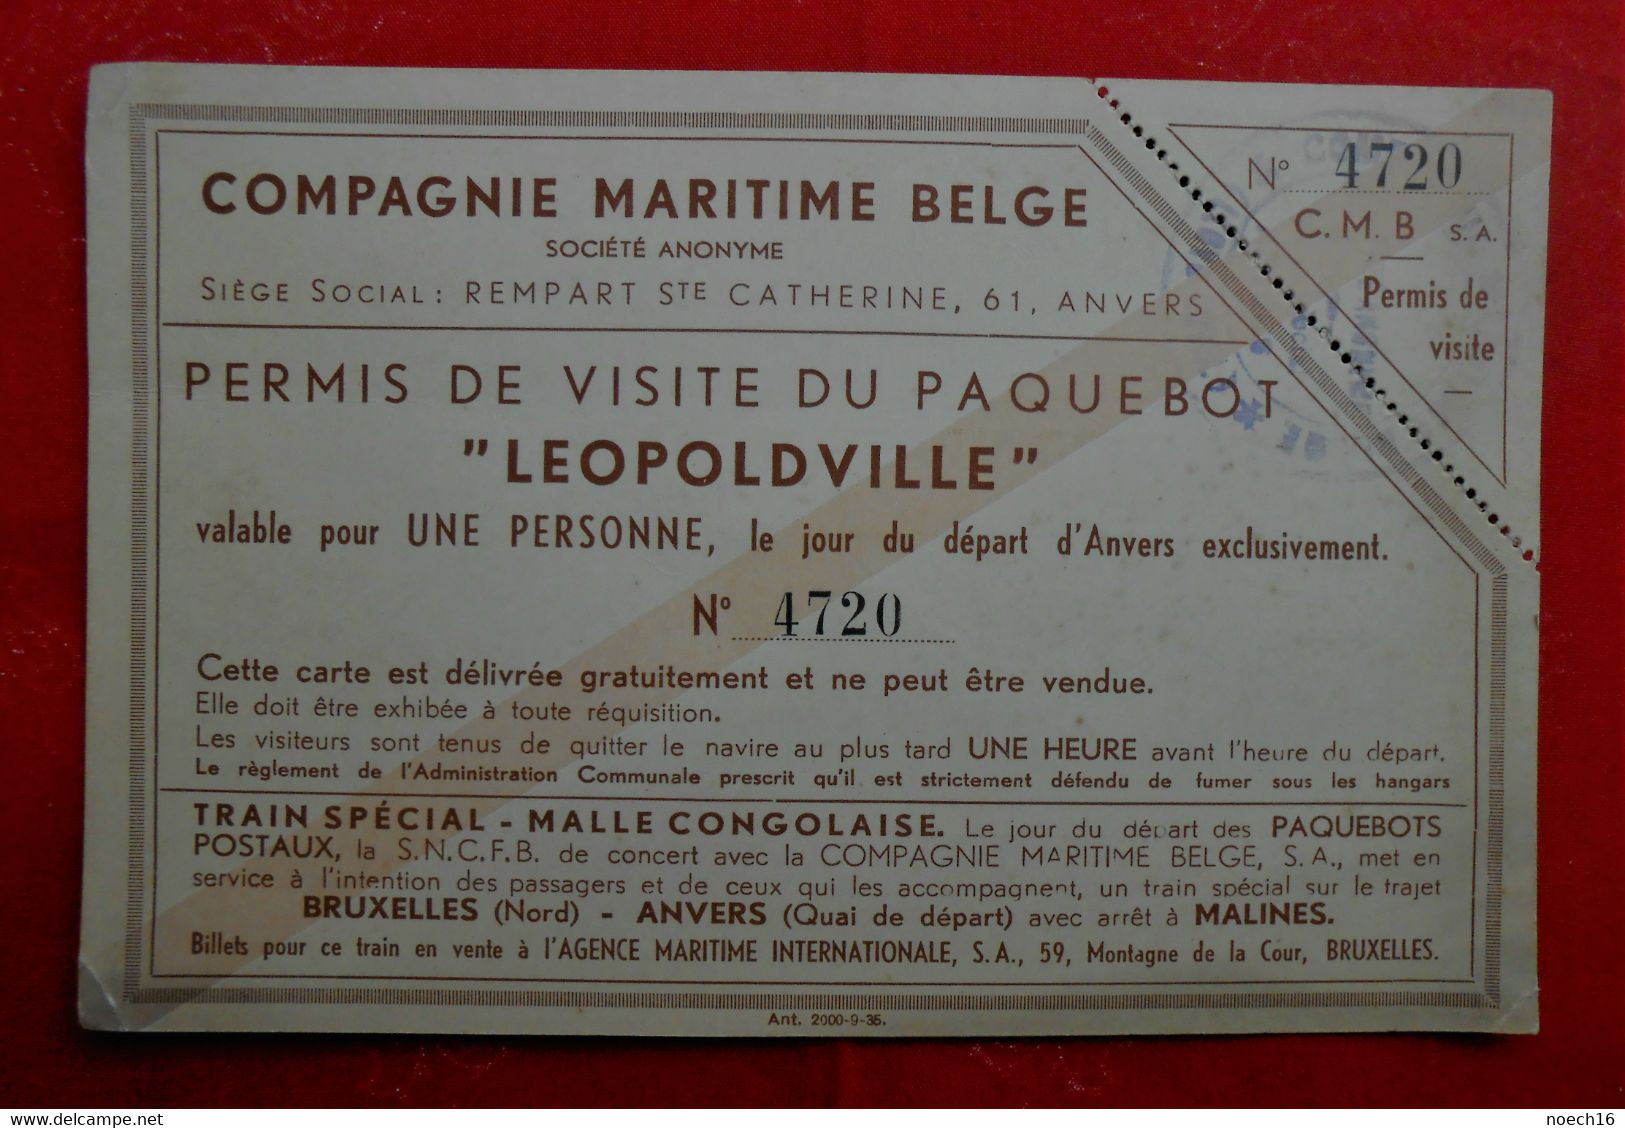 Compagnie Maritime Belge / Permis De Visite Du Paquebot "LEOPOLVILLE" - Tickets D'entrée